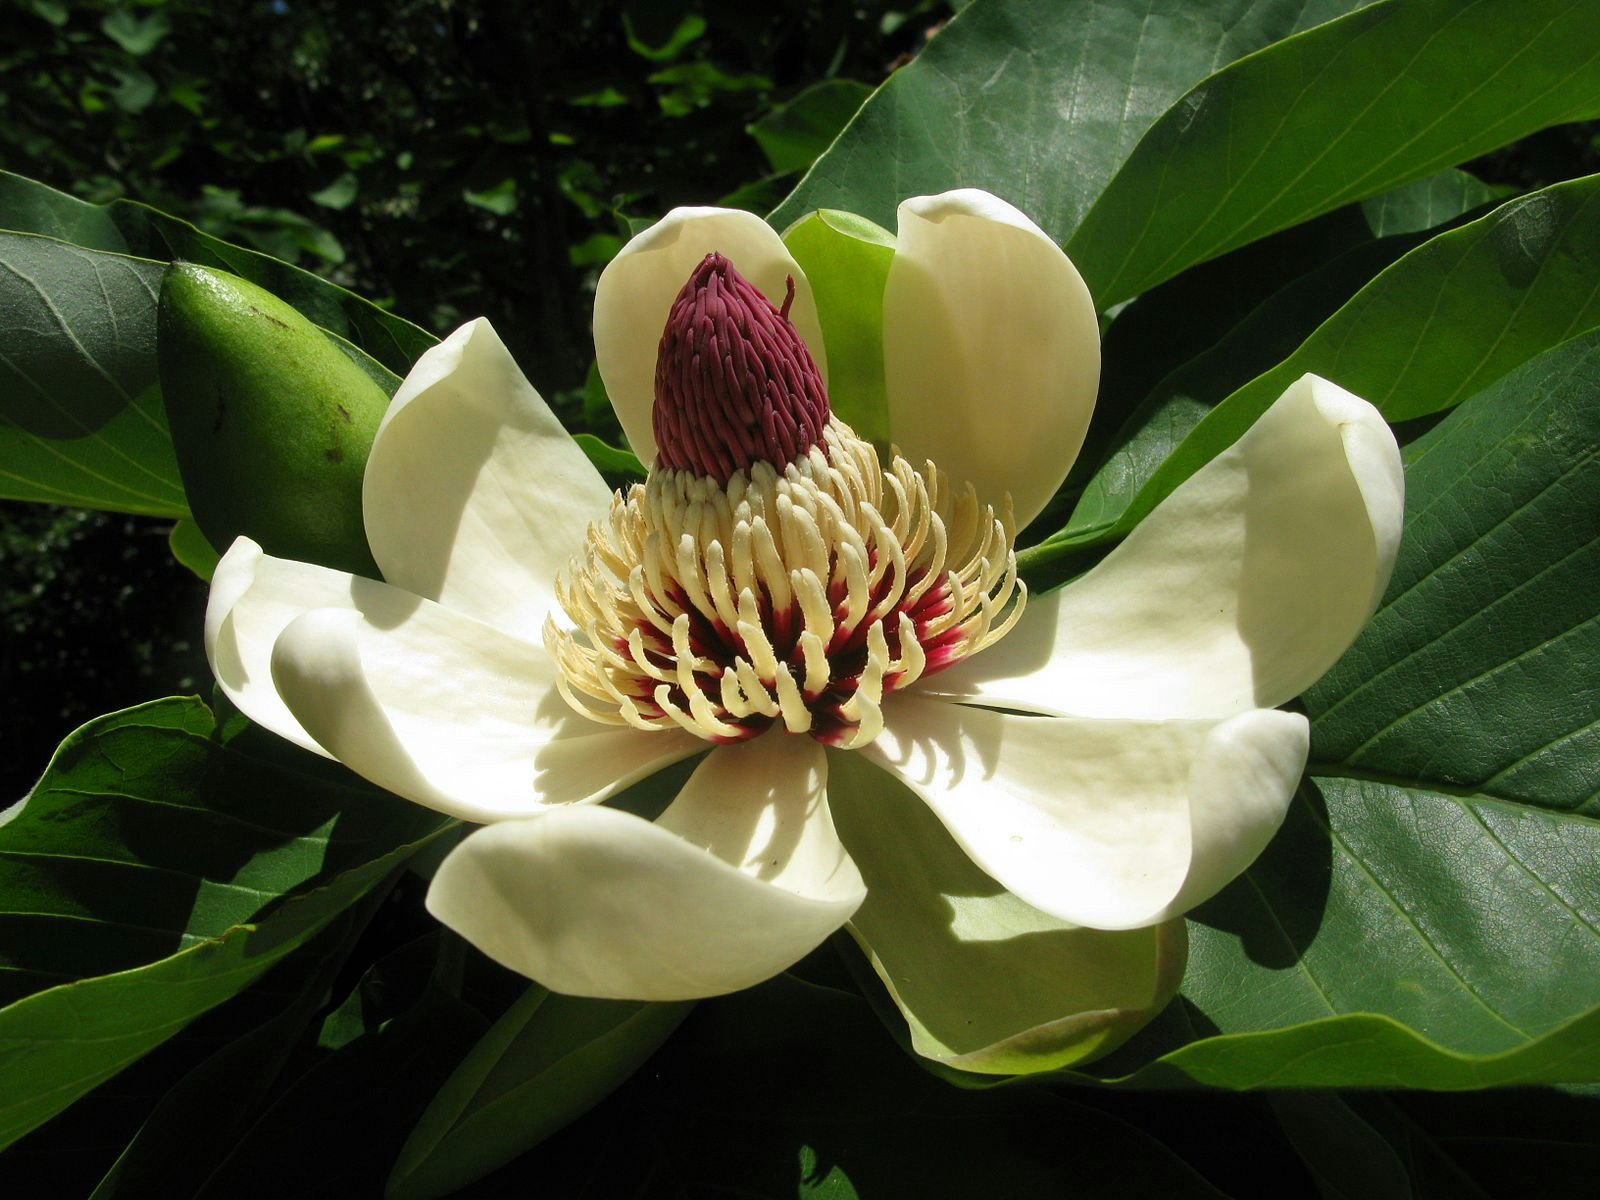 Junimagnolia -Magnolia obovata